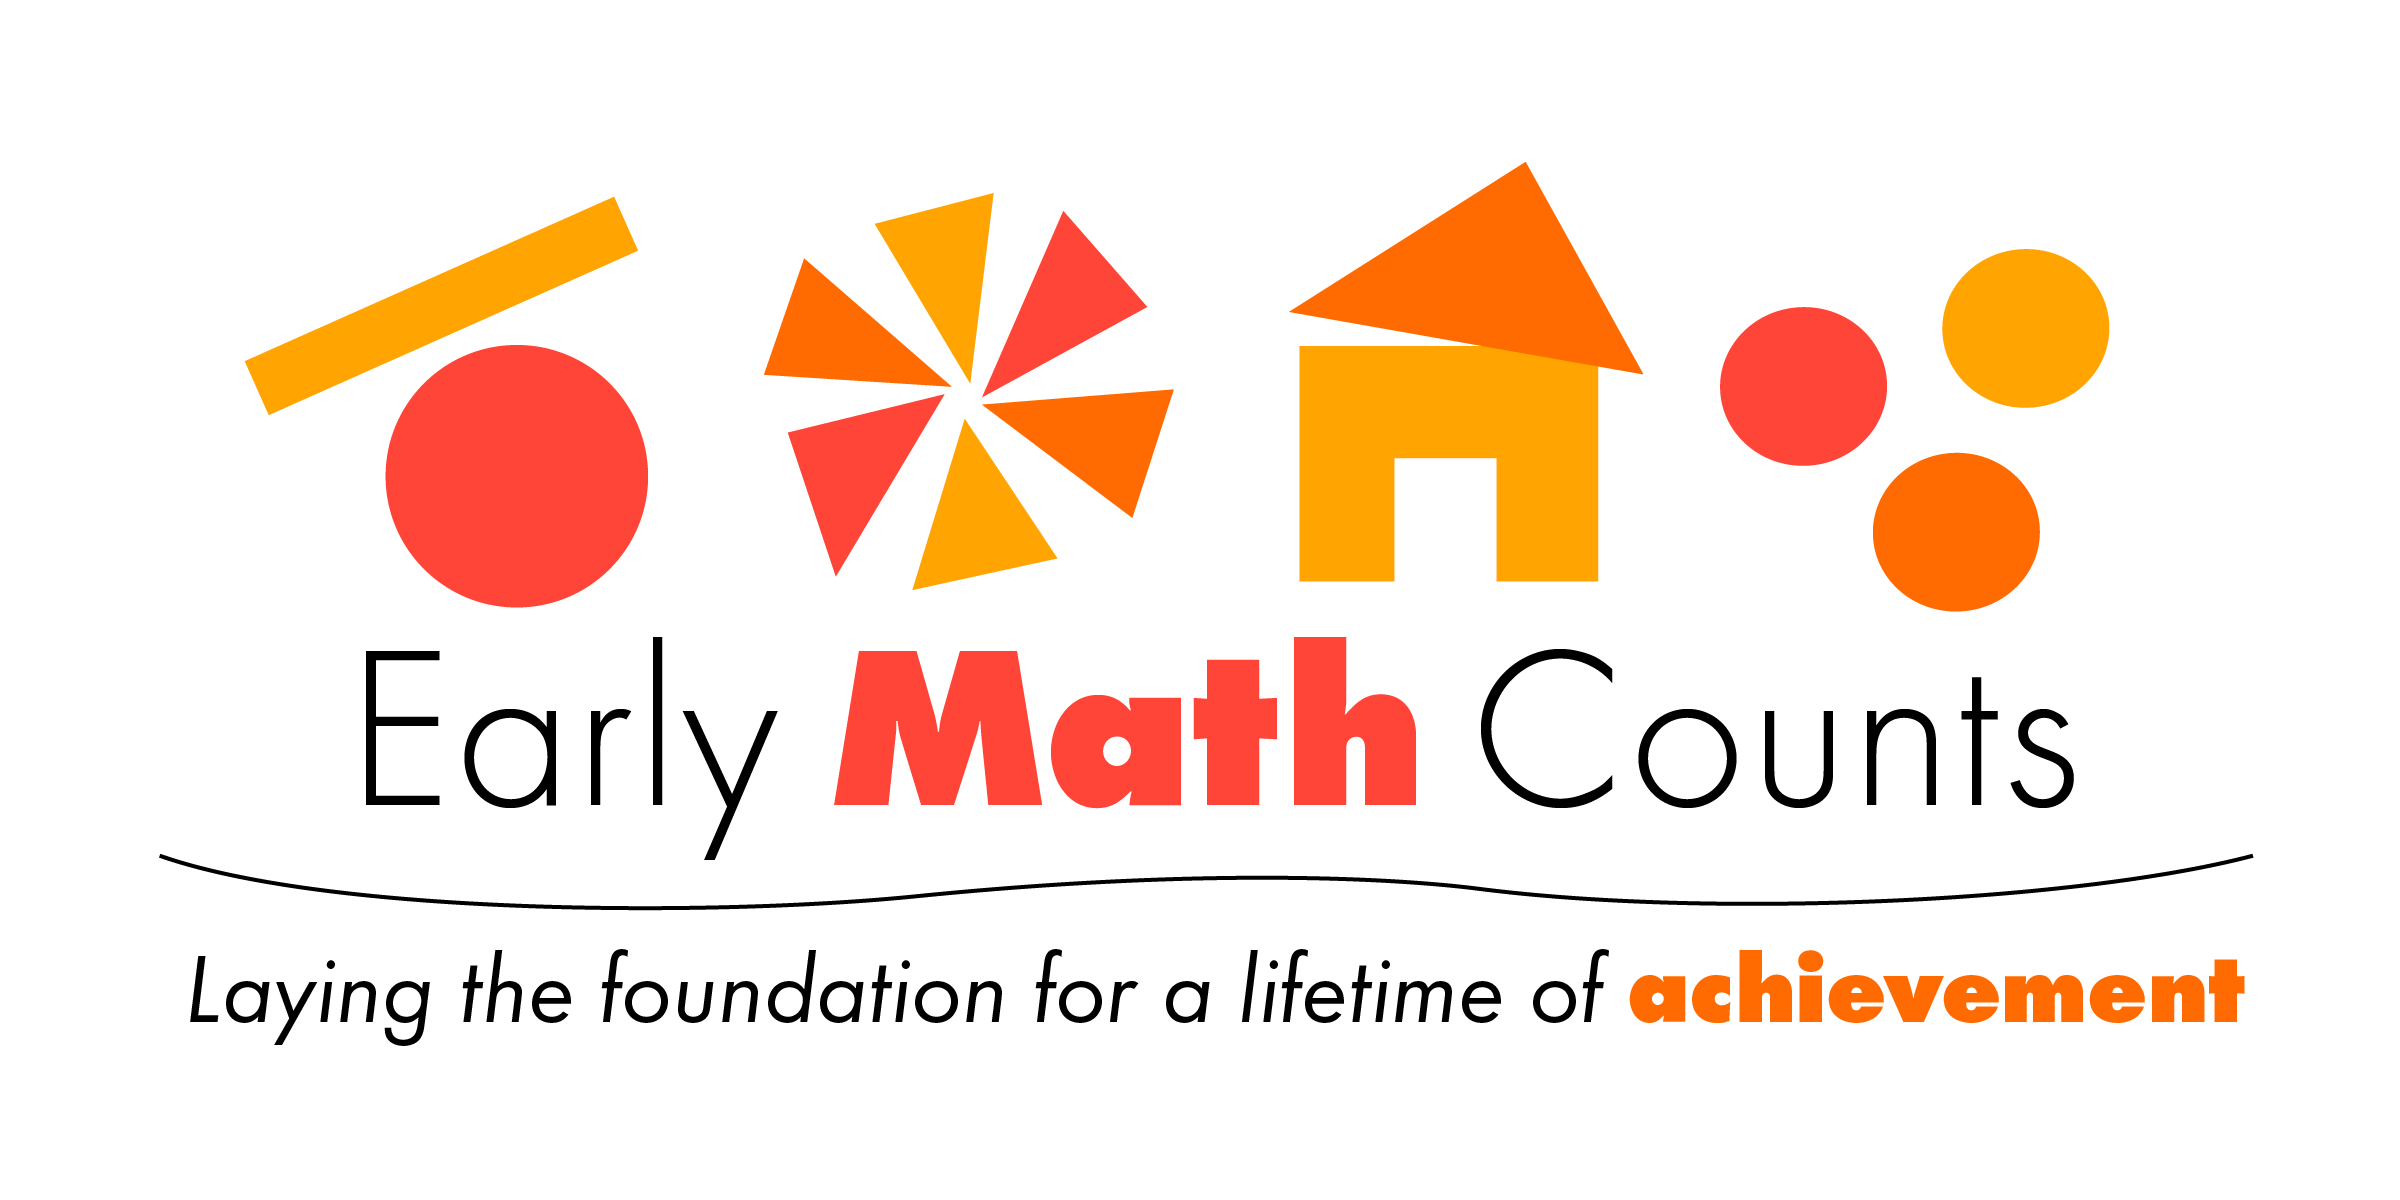 Early Math Matters